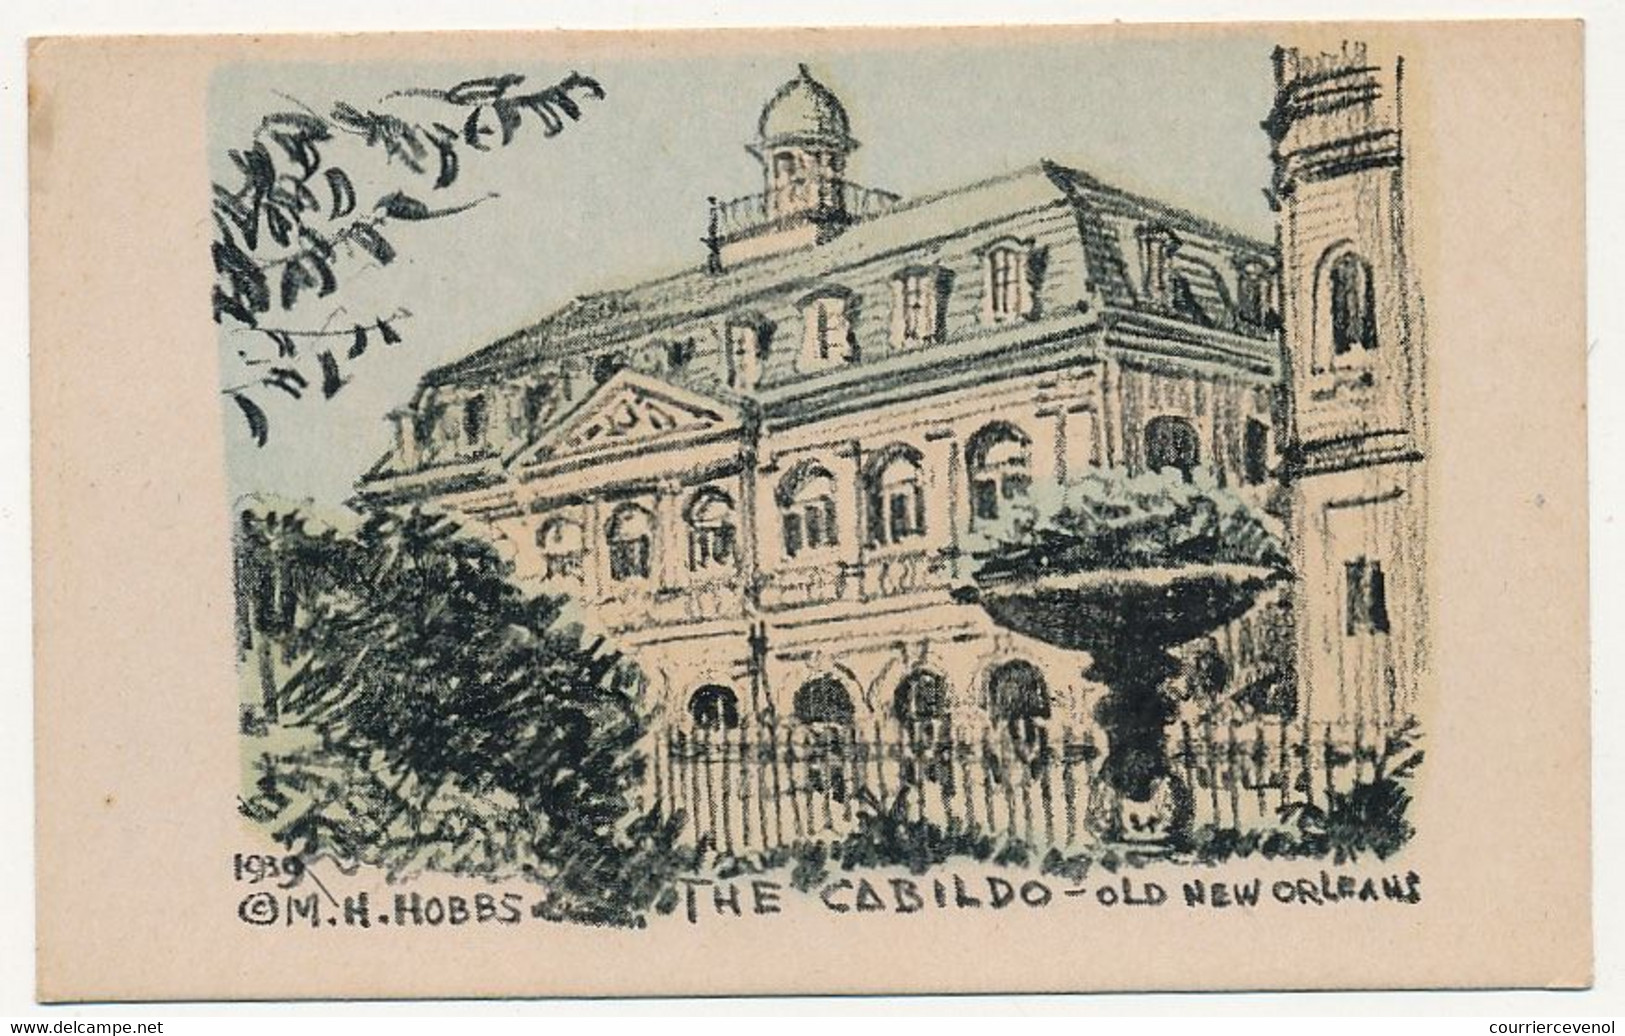 6 CPA - ETATS UNIS - NEW ORLEANS - 6 cartes postales illustrées M.H.Hobs (1939) Vues de New Orleans